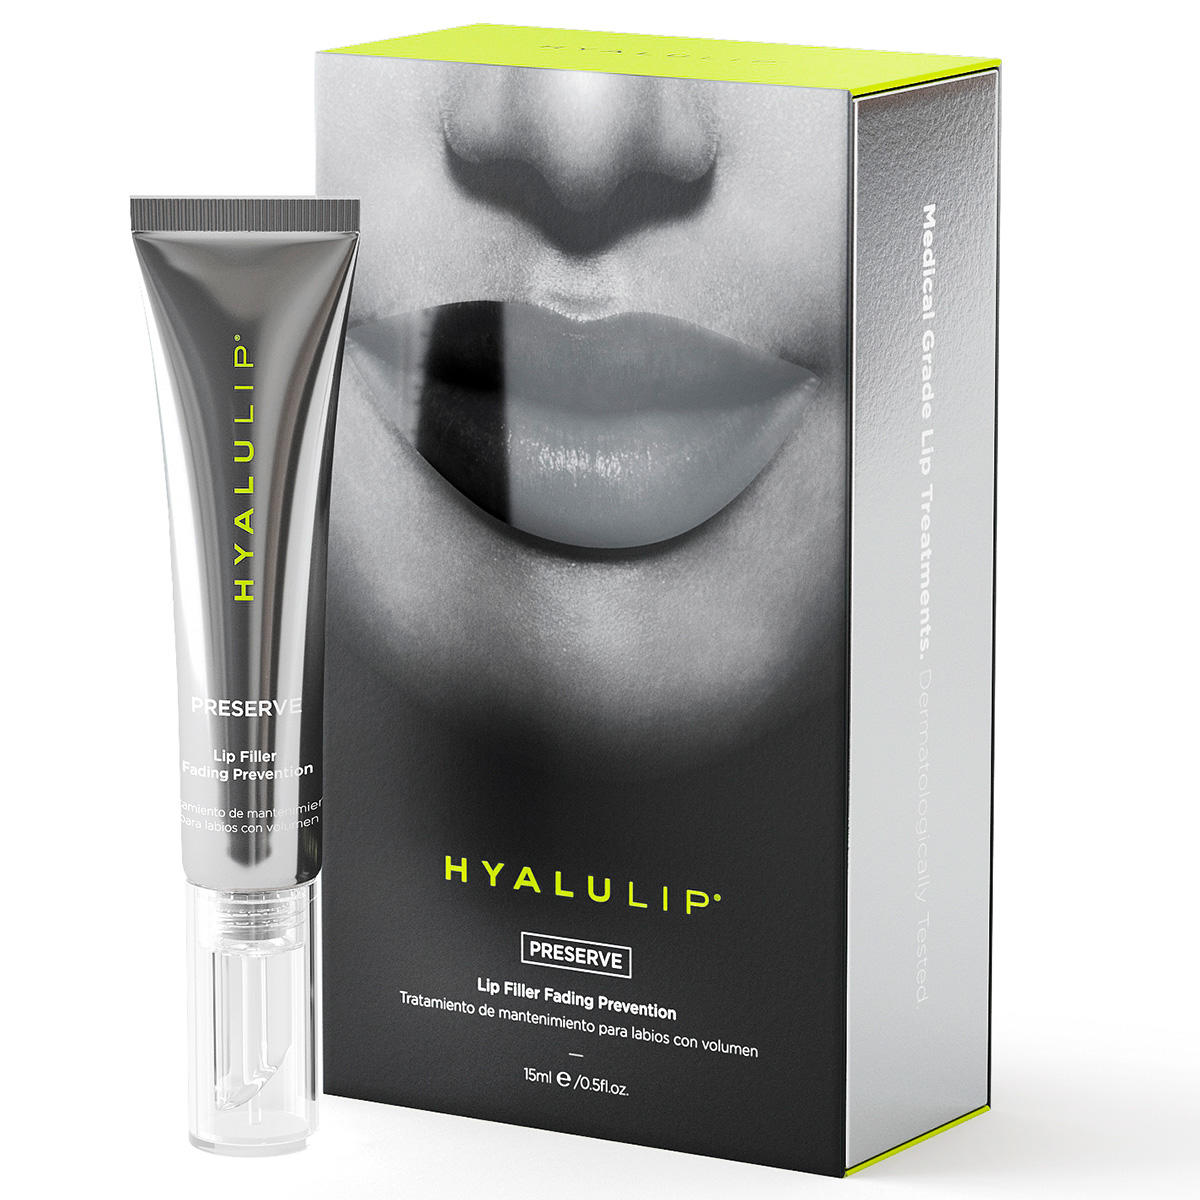 Hyalulip PRESERVE Lip Filler Fading Prevention 15 ml - 2